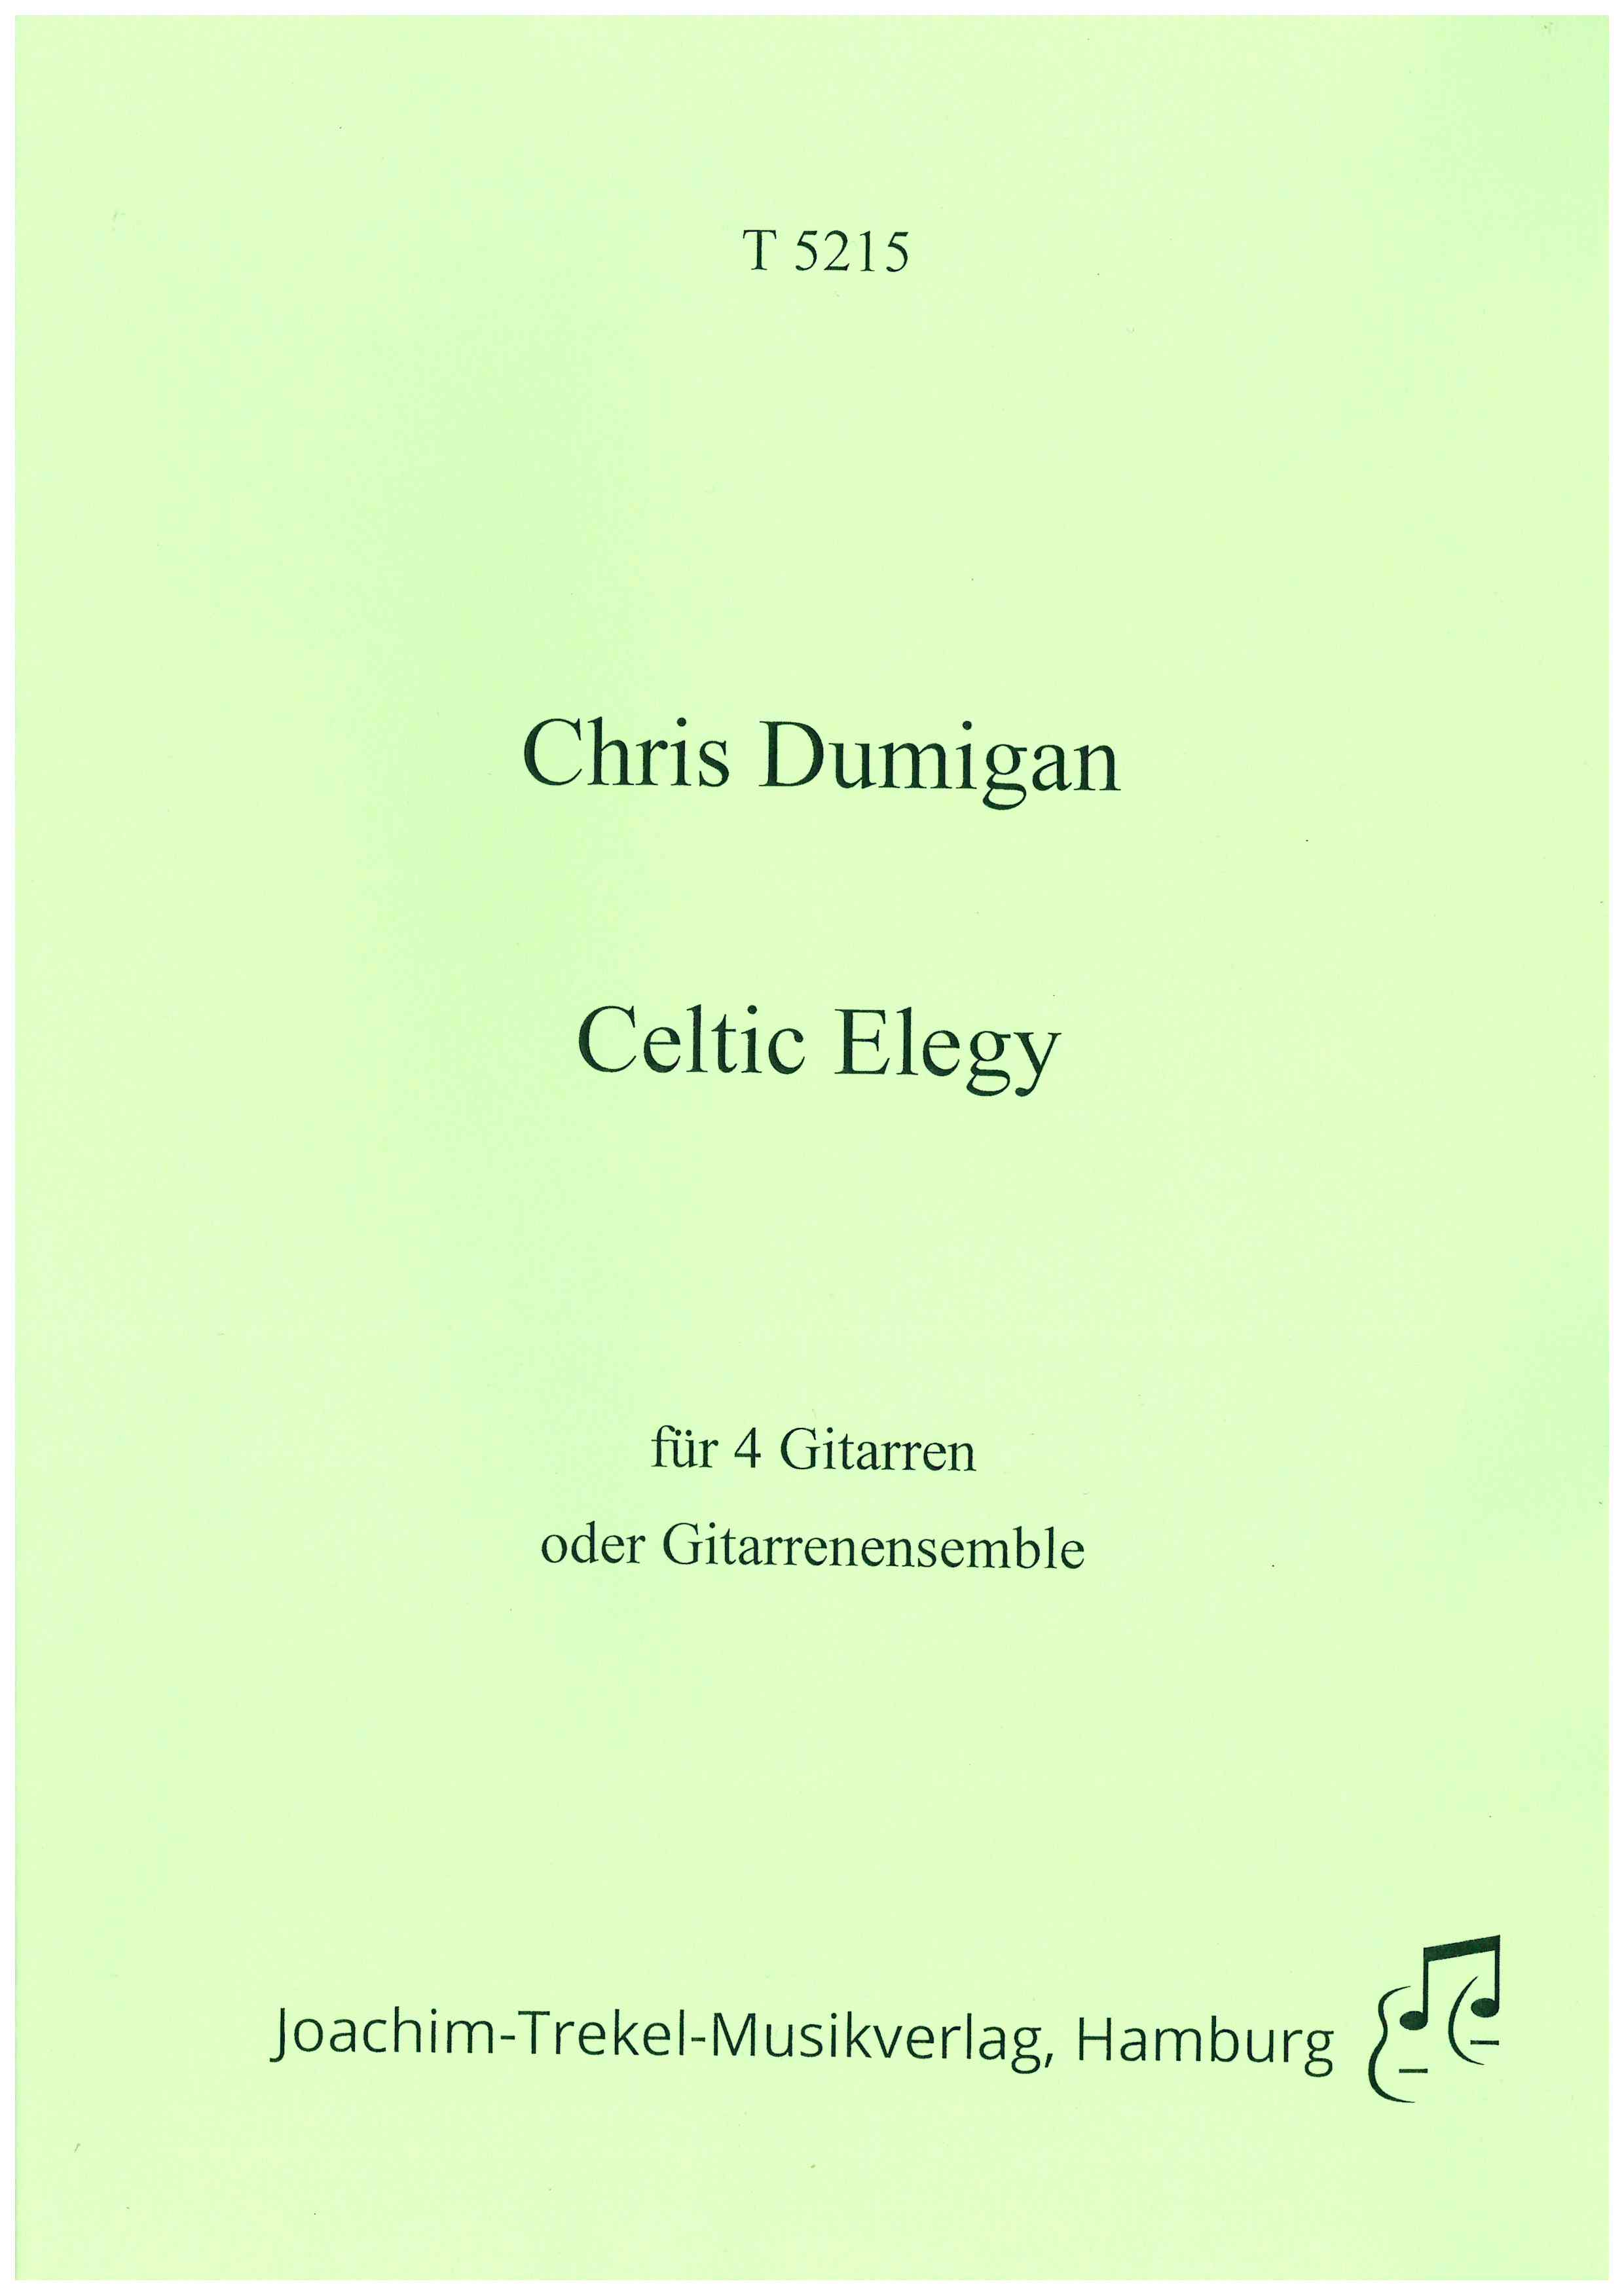 Celtic Elegy